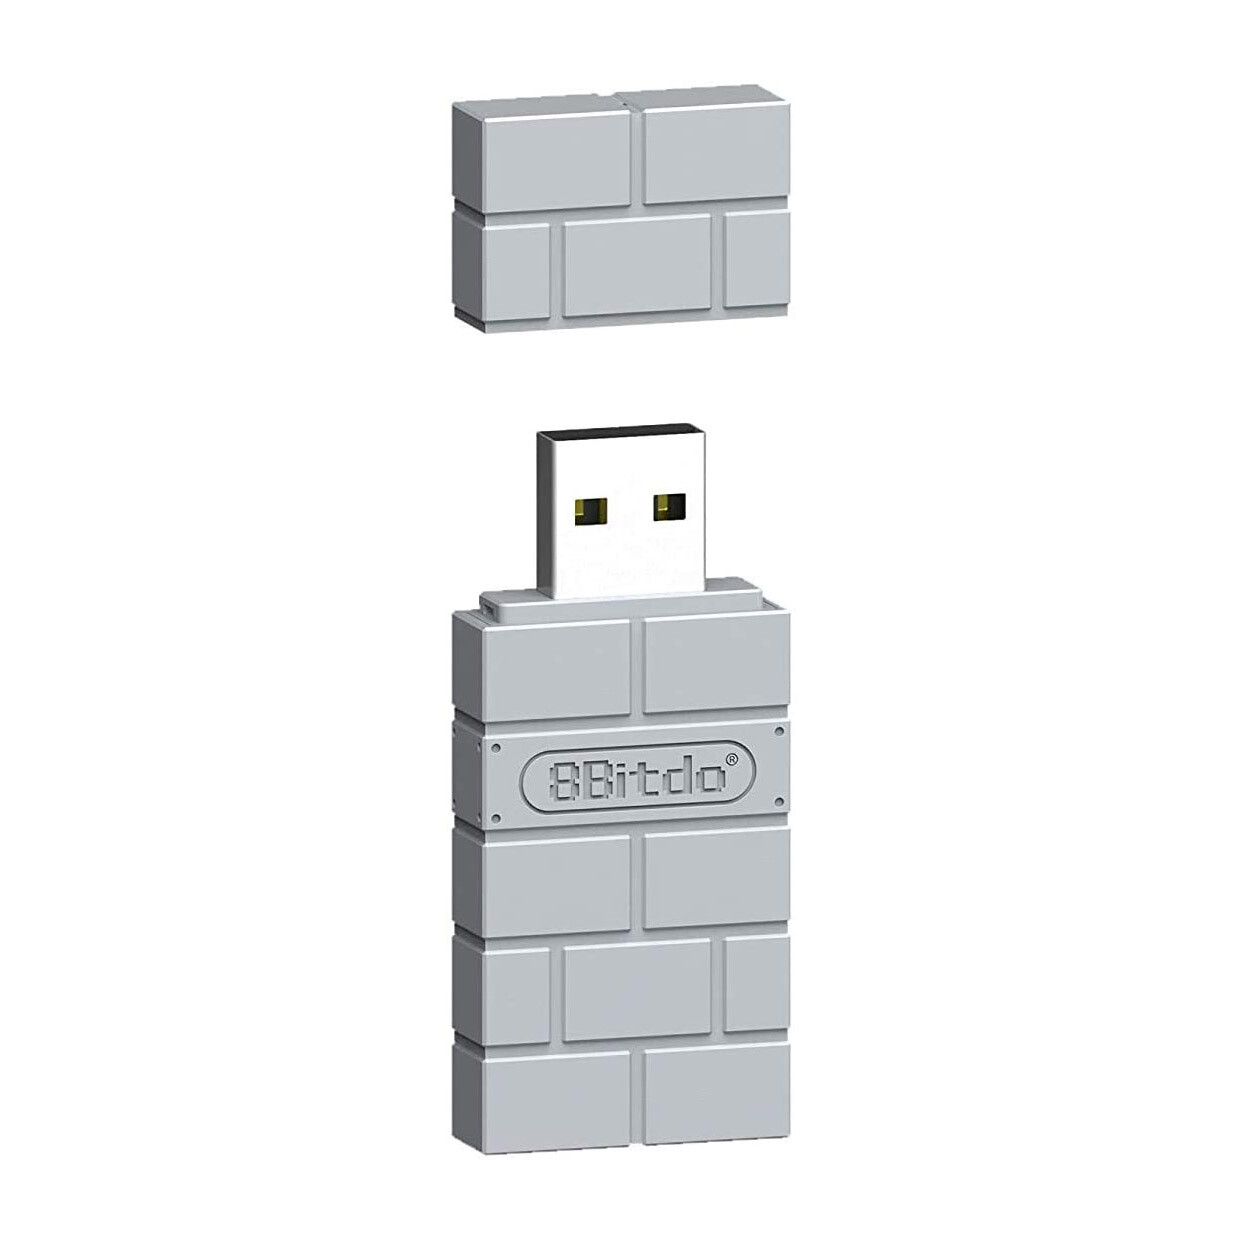 8bitdo Receiver (USB PS)